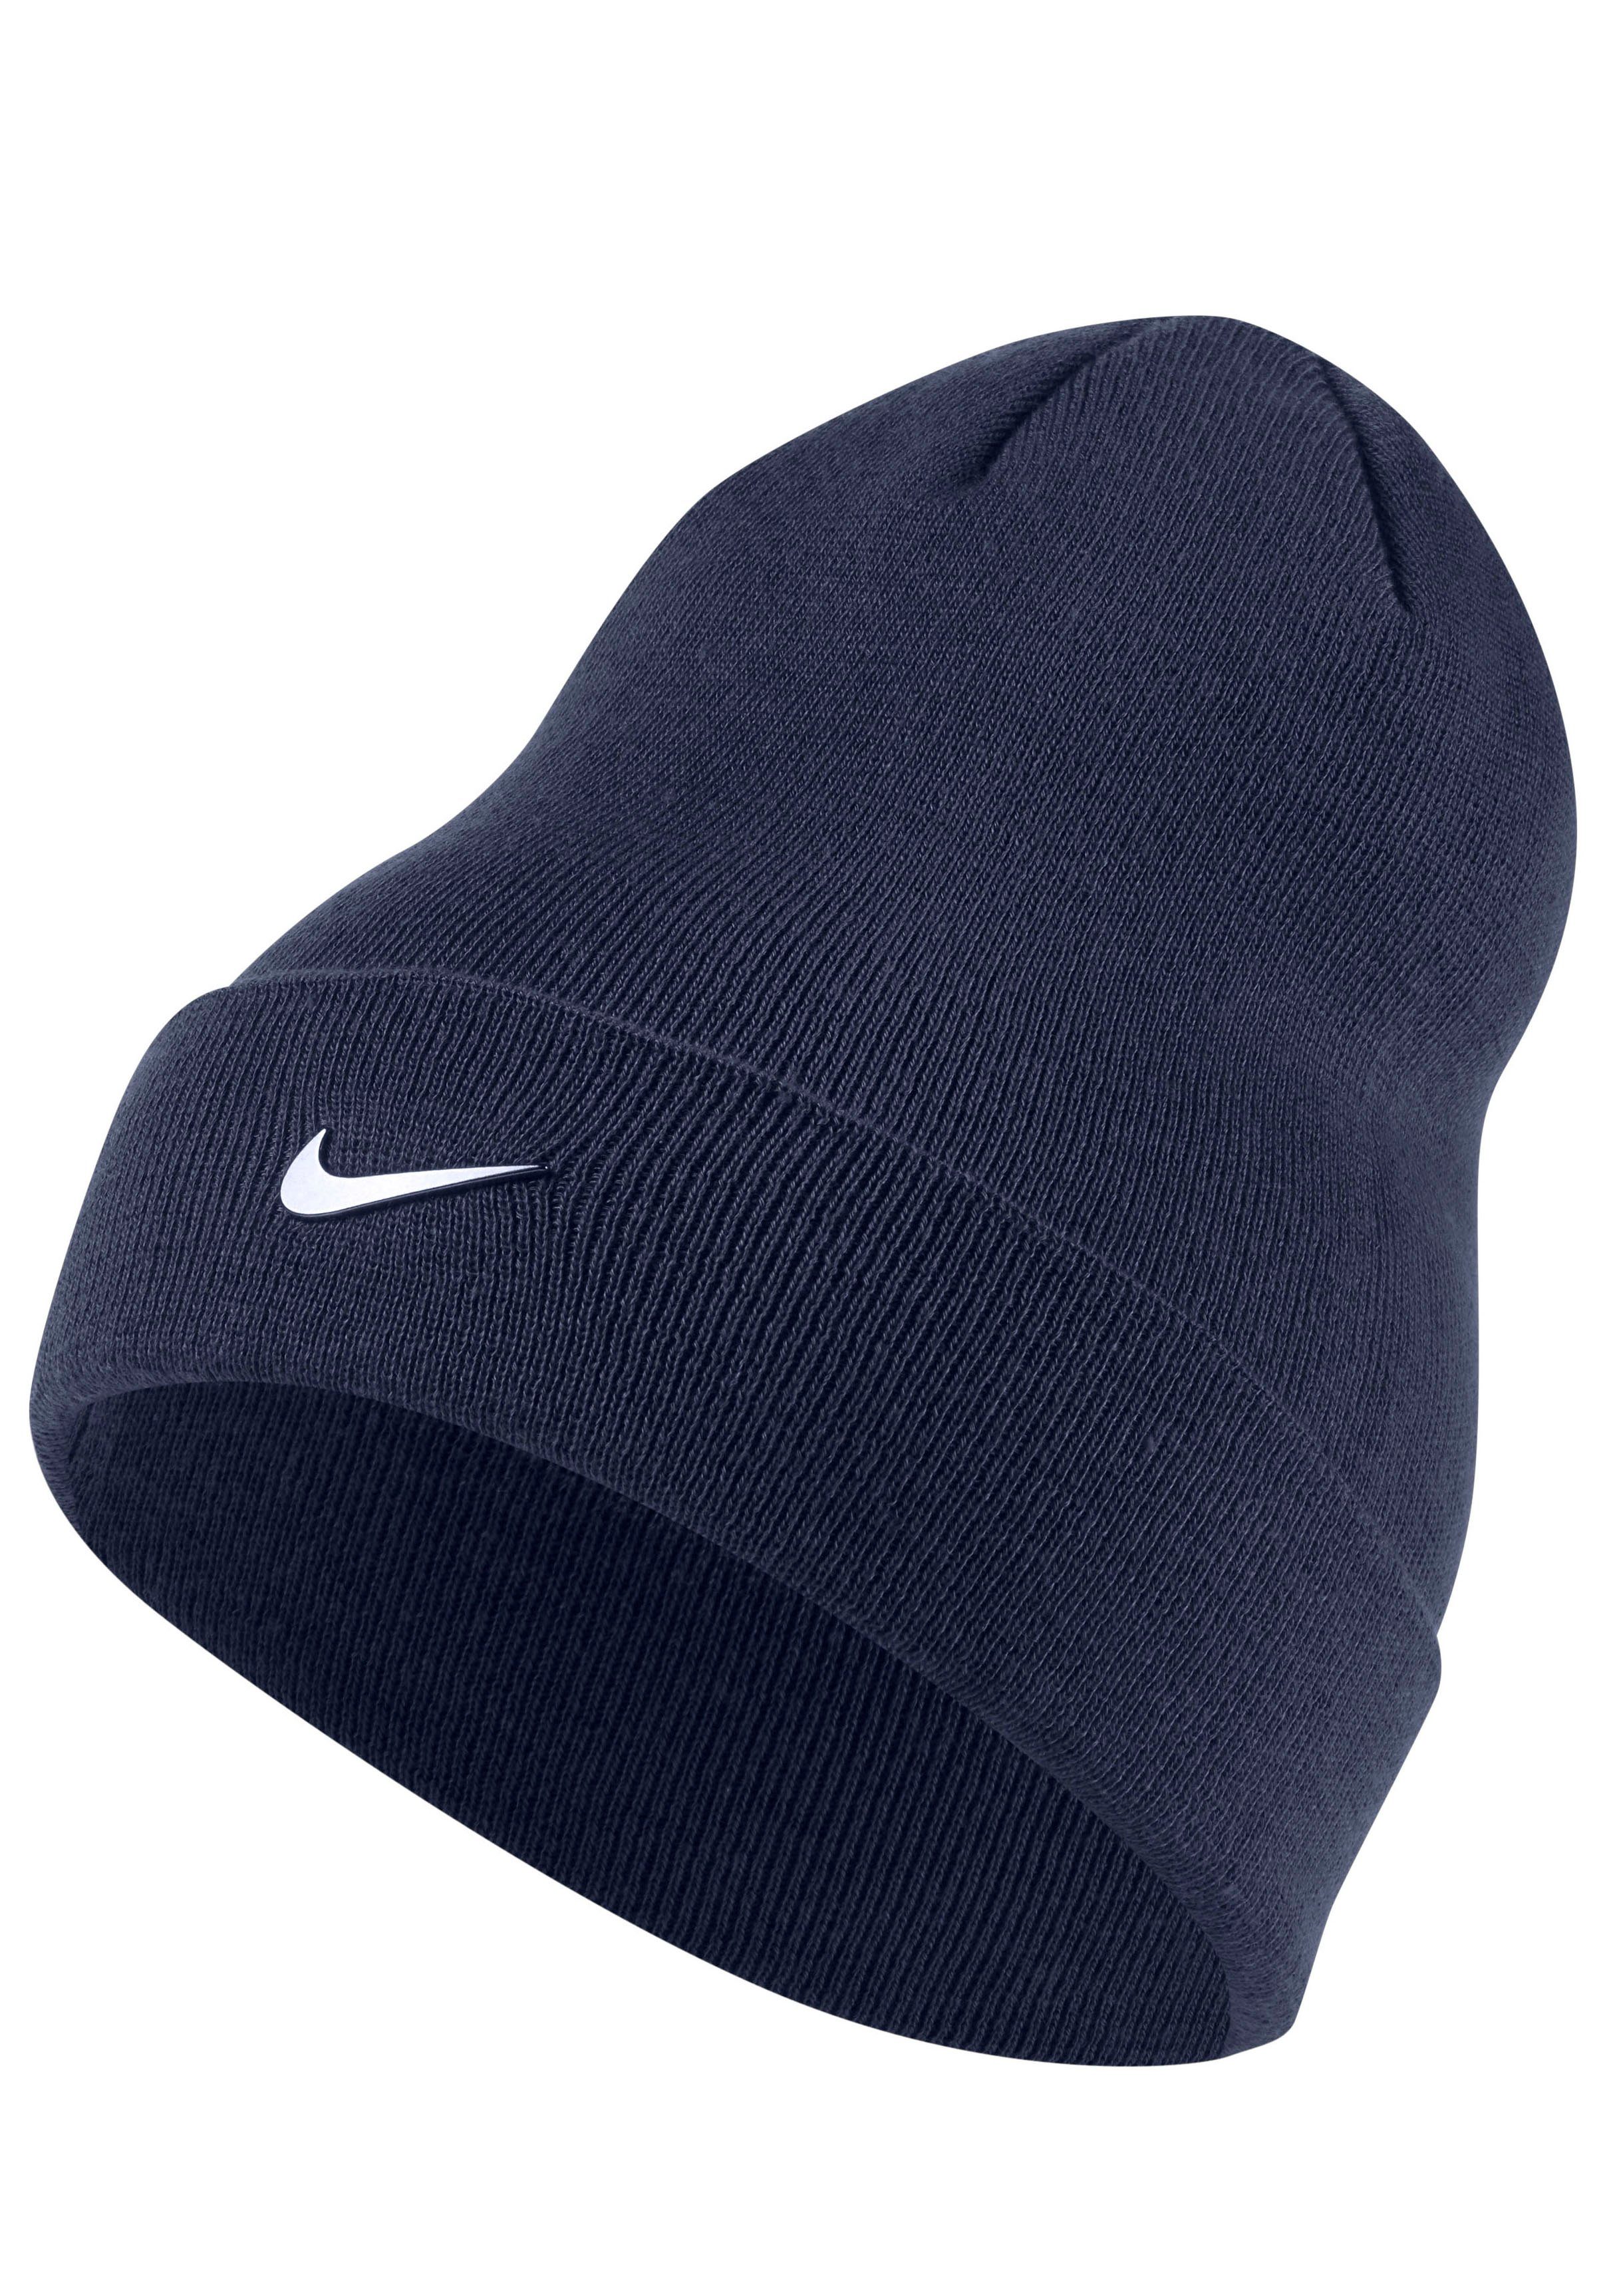 Nike Jungen Caps online kaufen » Kappe | OTTO